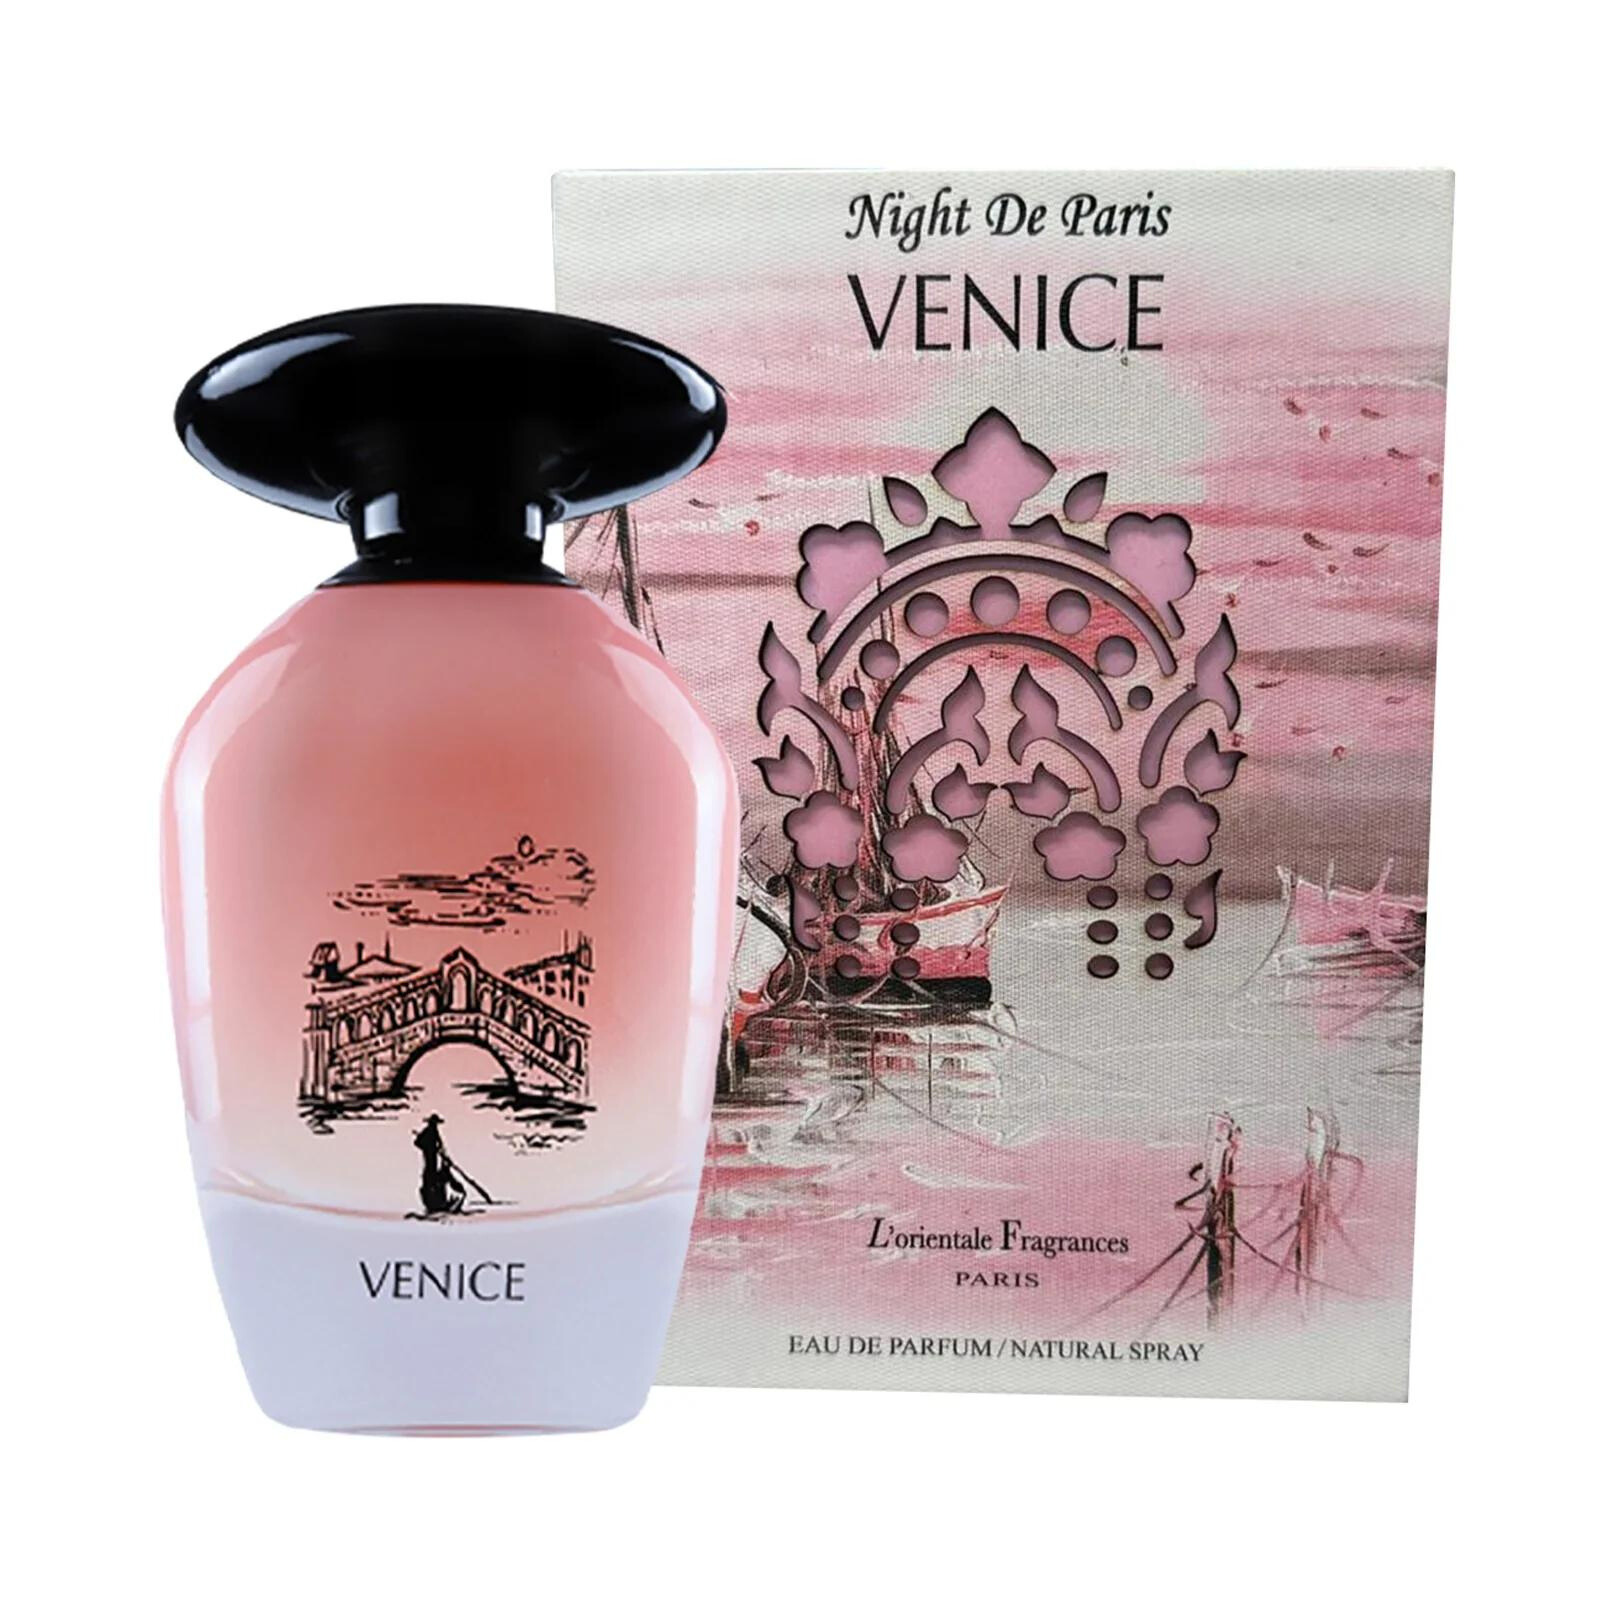 L'Orientale Fragrances Night De Paris Venice